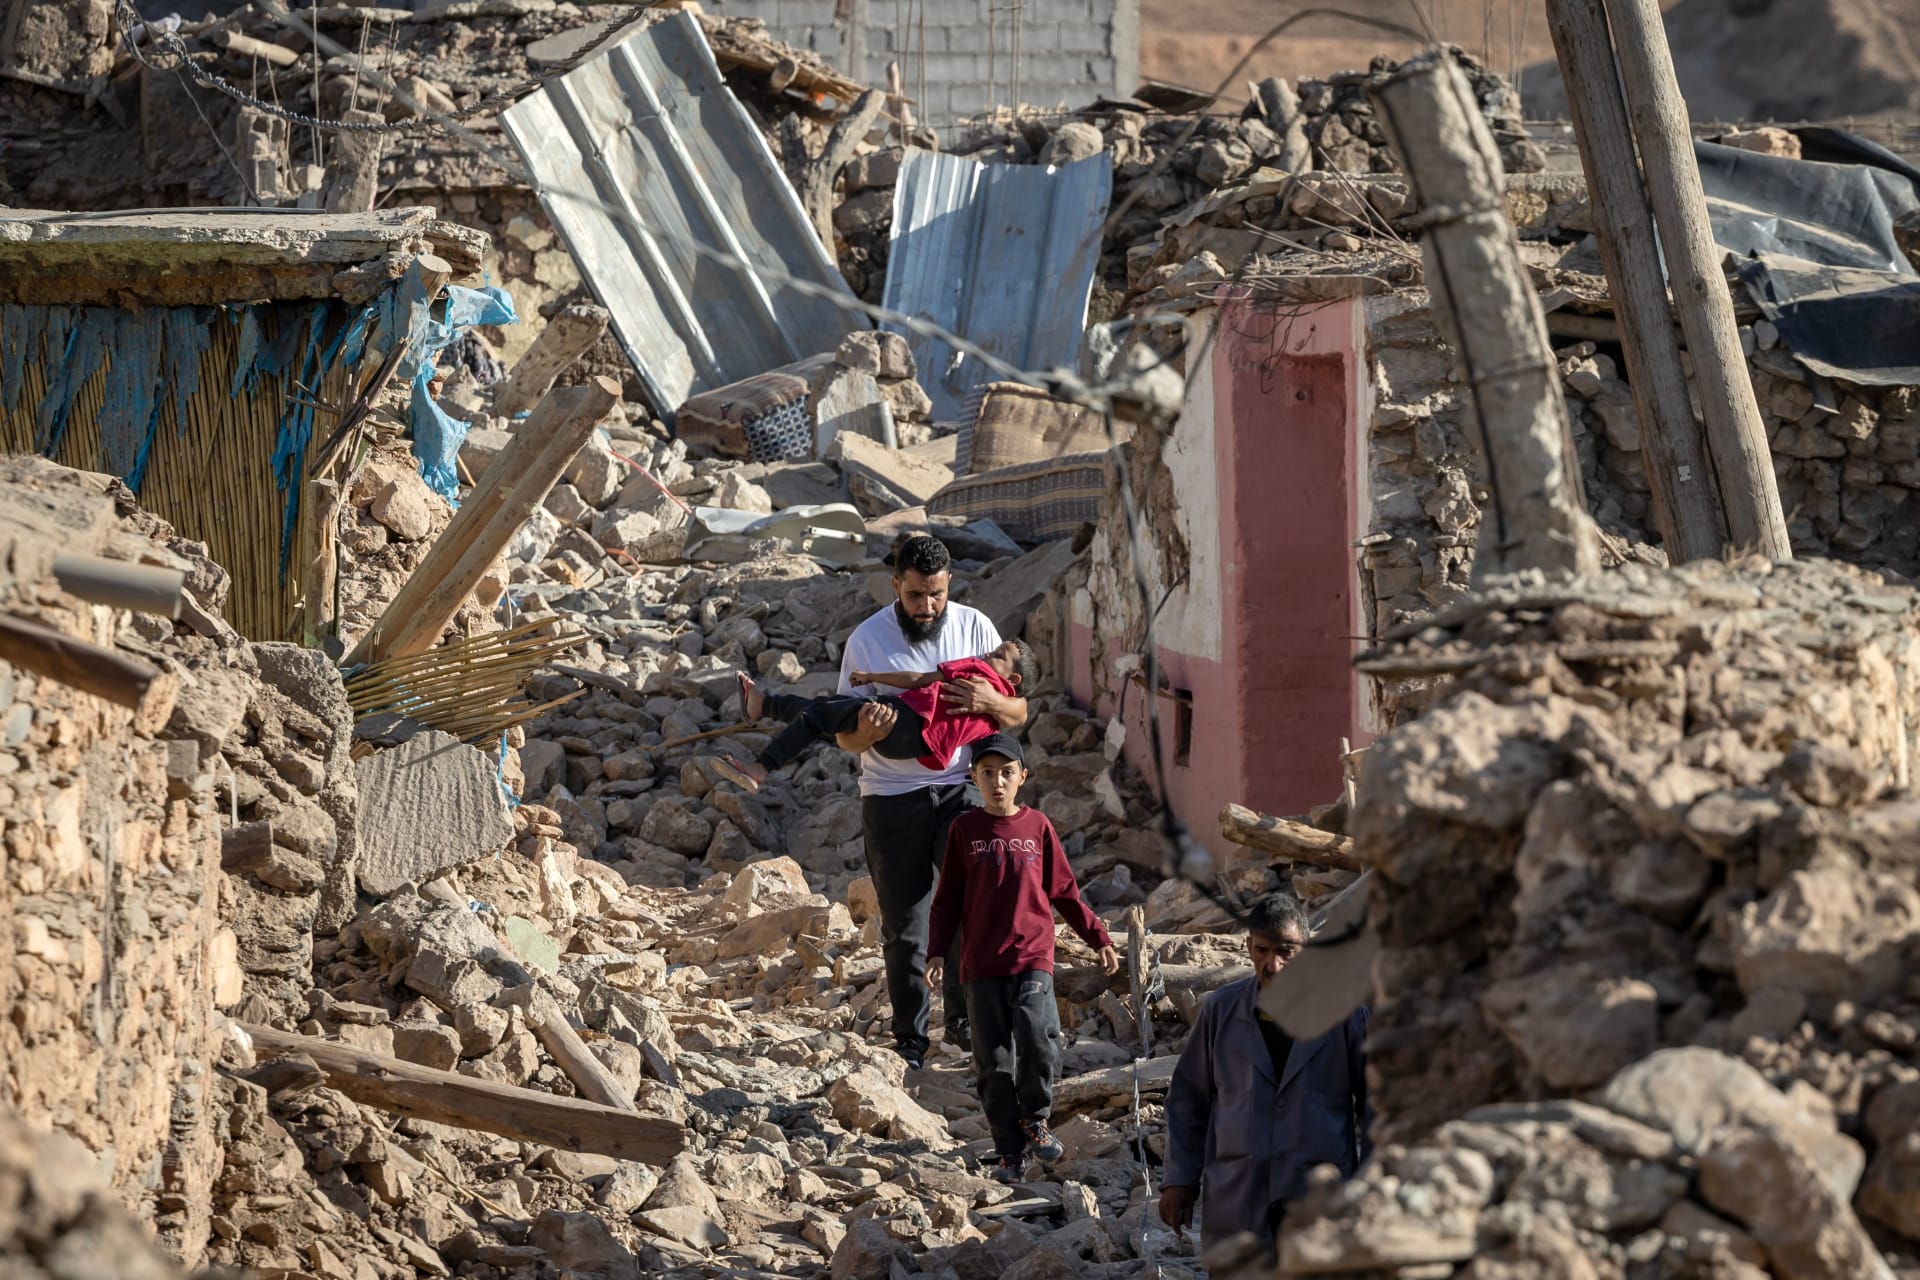 السيسي يعلن الحداد 3 أيام على ضحايا فيضانات ليبيا وزلزال المغرب.. ويوجه القوات المسلحة بإرسال الإغاثة العاجلة